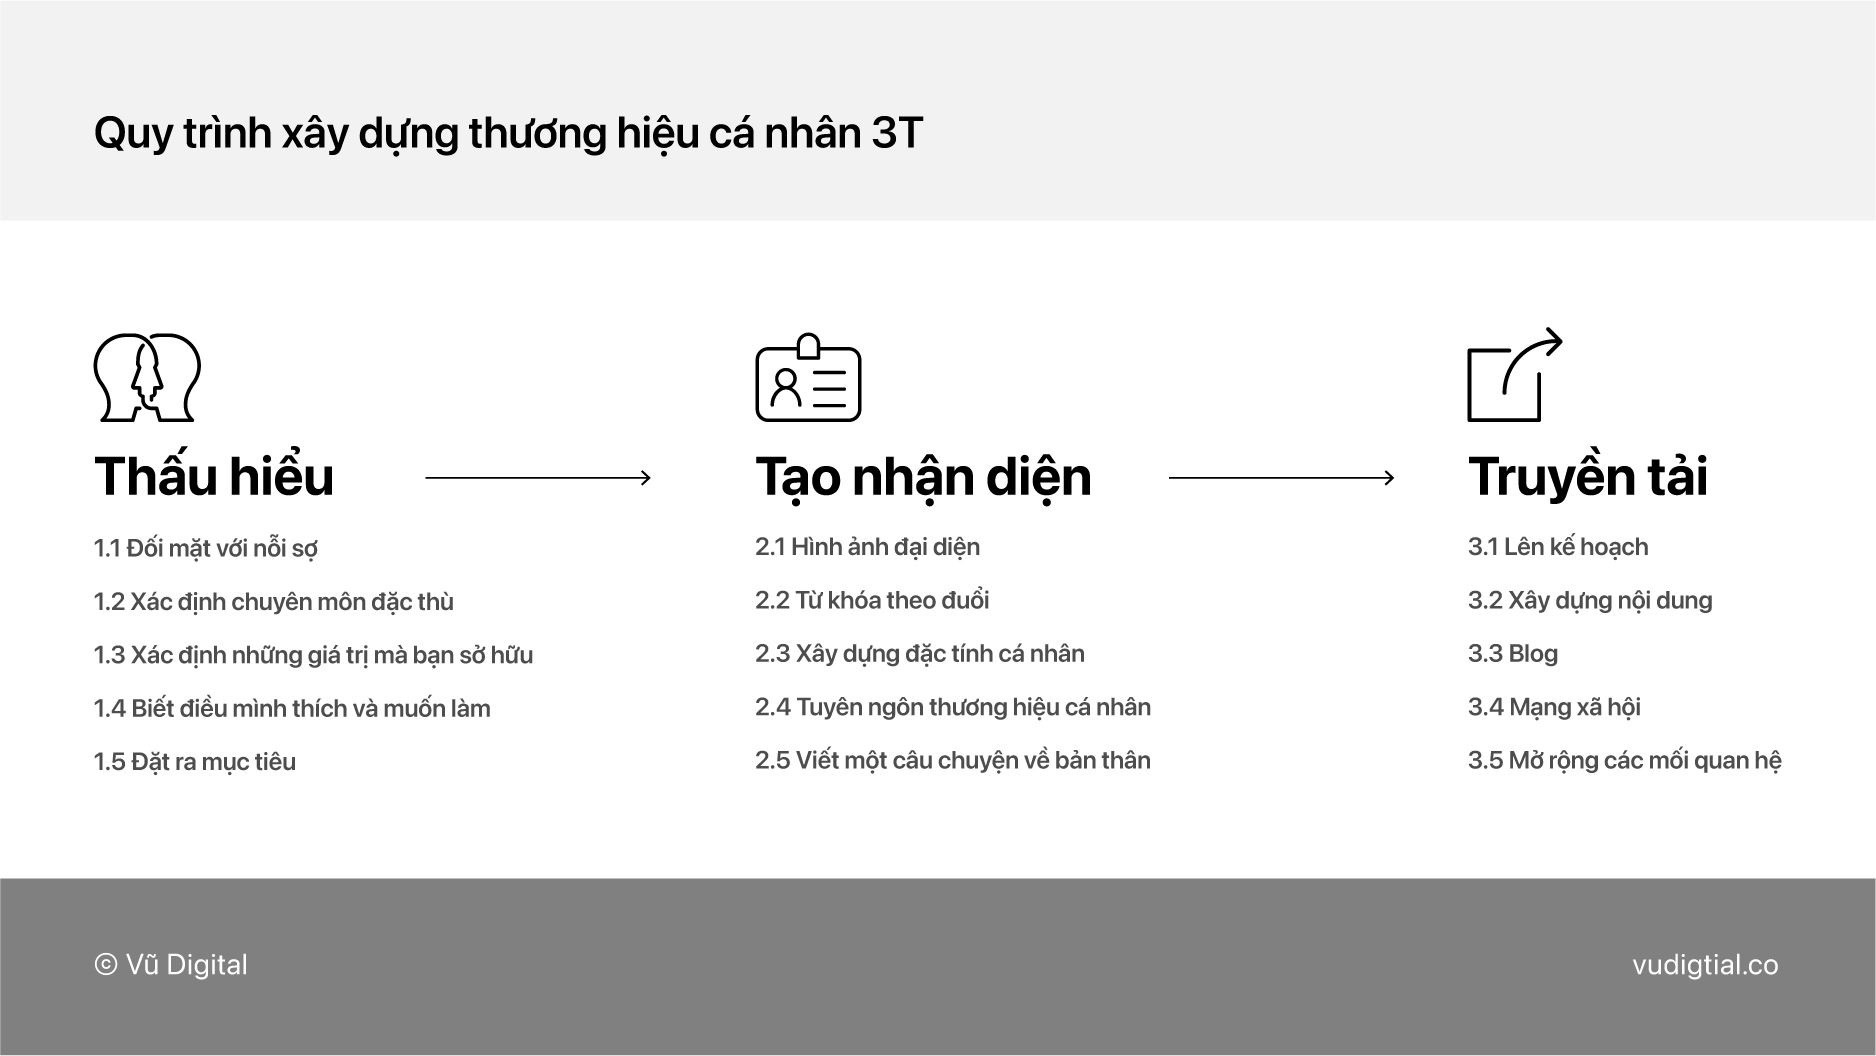 Hướng dẫn xây dựng thương hiệu cá nhân với mô hình 3T đơn giản   Advertising Vietnam